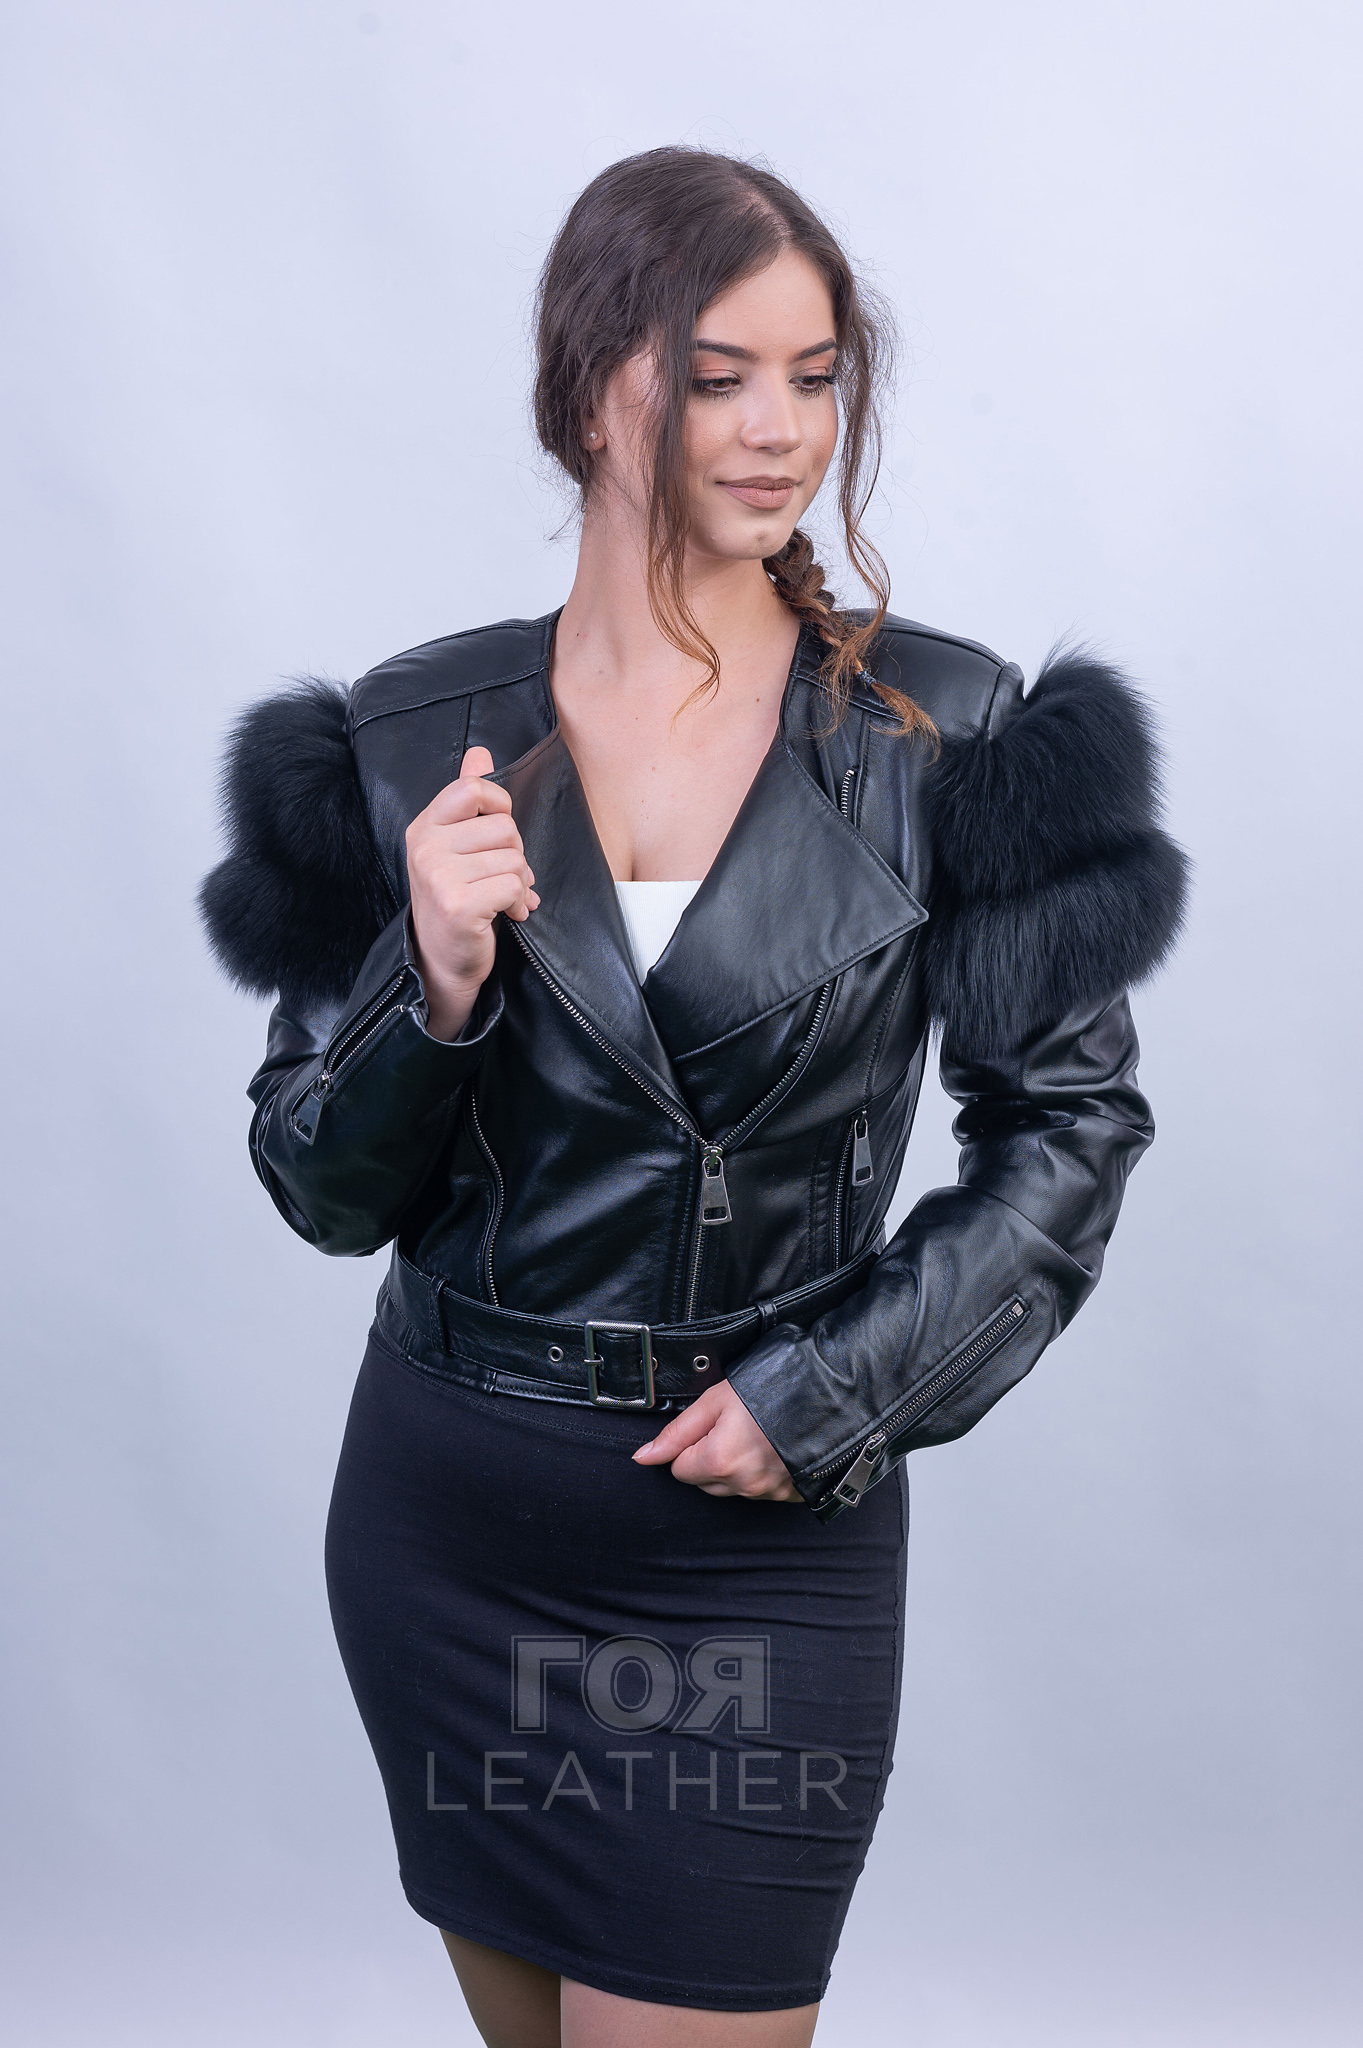 Късо кожено яке с лисица от ГОЯ Leather.Екстравагантен къс модел кожено яке с гарнитура по ръкавите от лисица. Изделието е изработено от 100% естествена кожа.